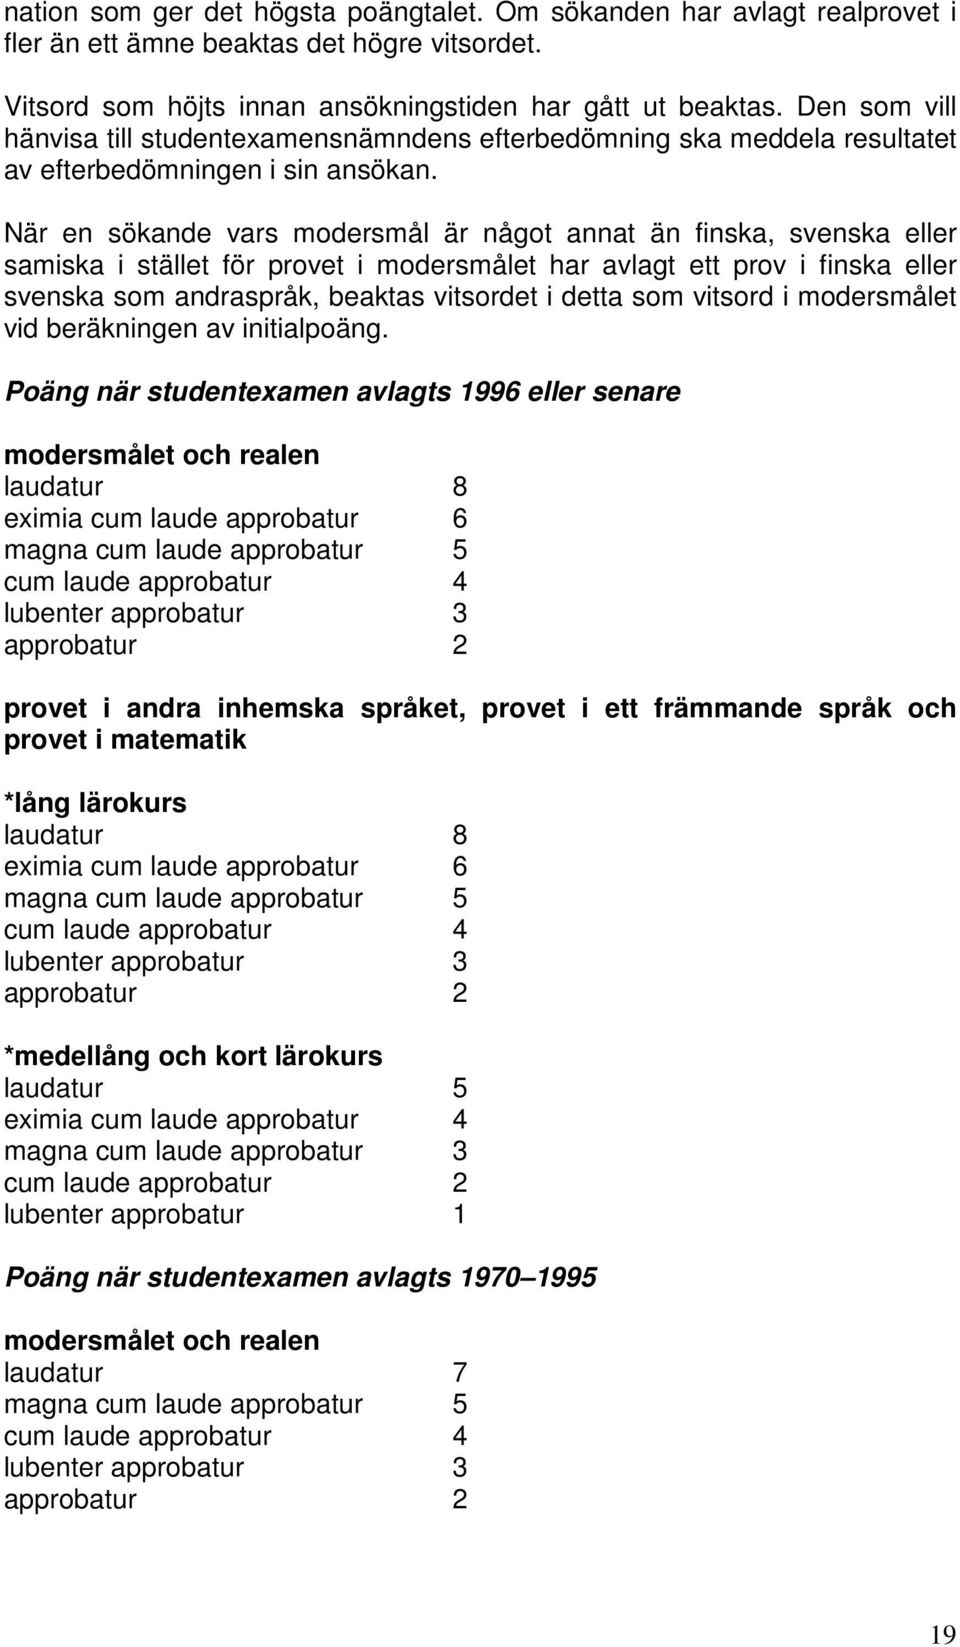 När en sökande vars modersmål är något annat än finska, svenska eller samiska i stället för provet i modersmålet har avlagt ett prov i finska eller svenska som andraspråk, beaktas vitsordet i detta